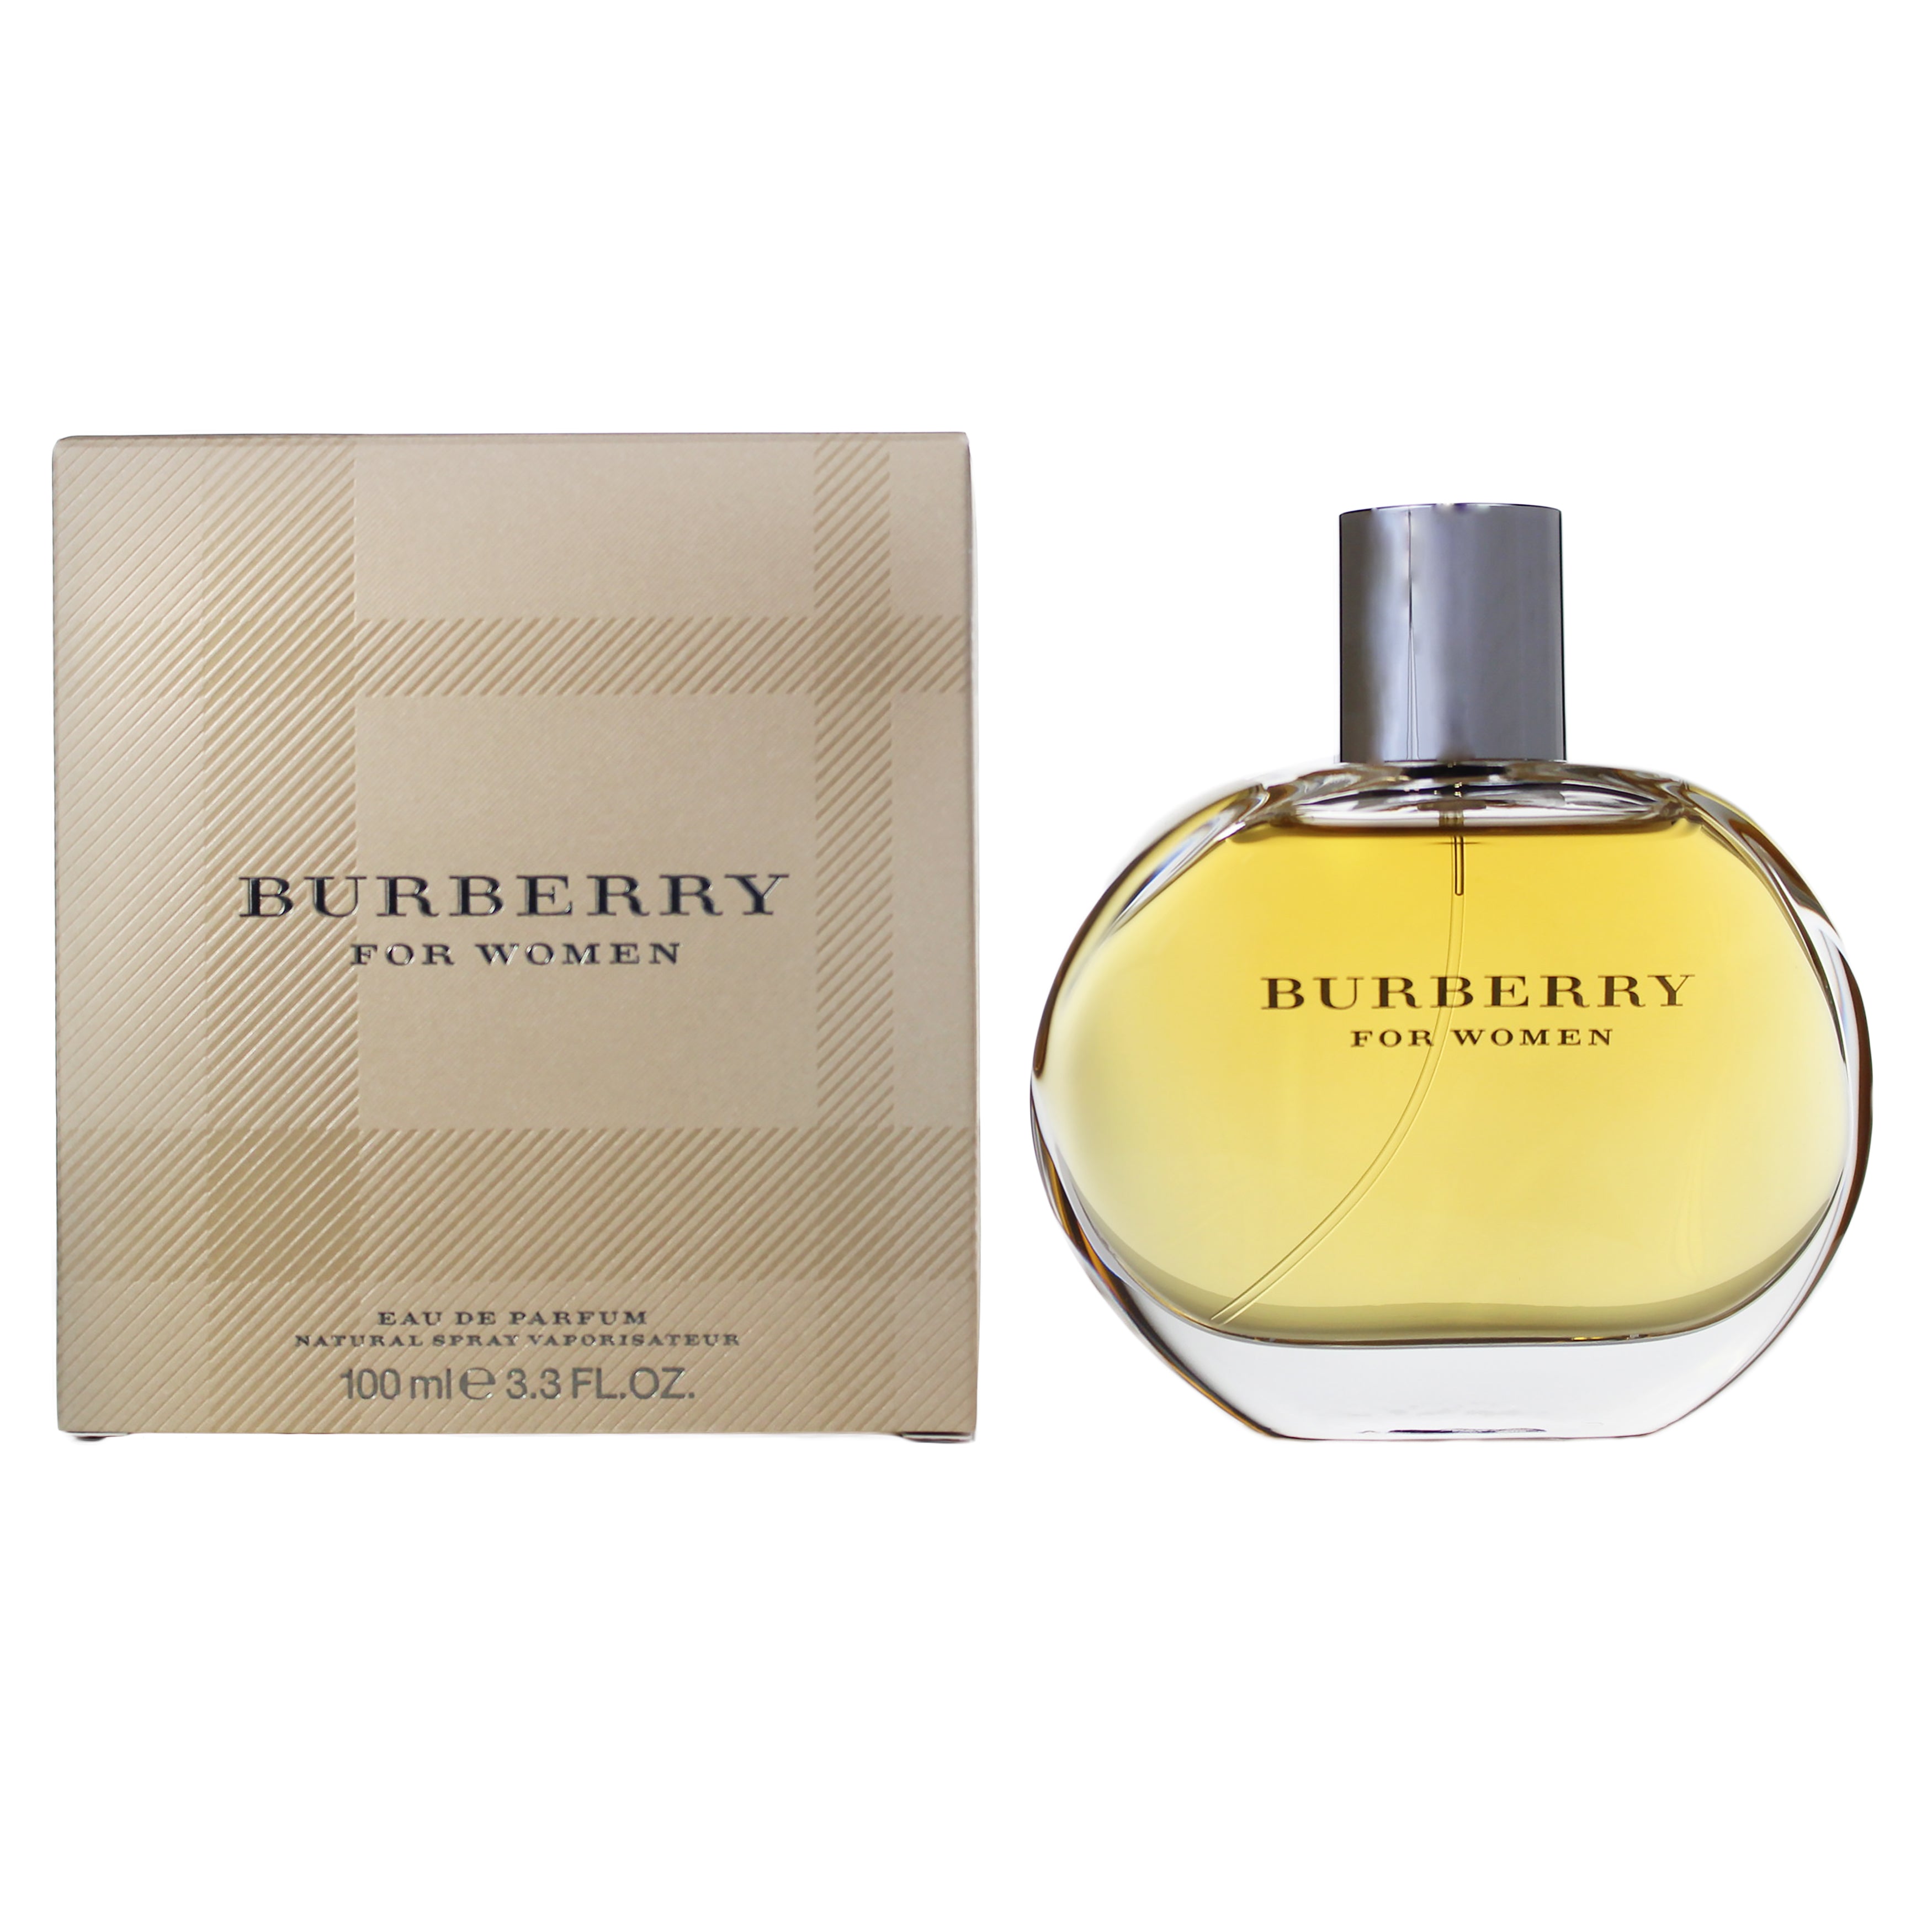 Burberry Perfume Eau De Parfum by Burberry